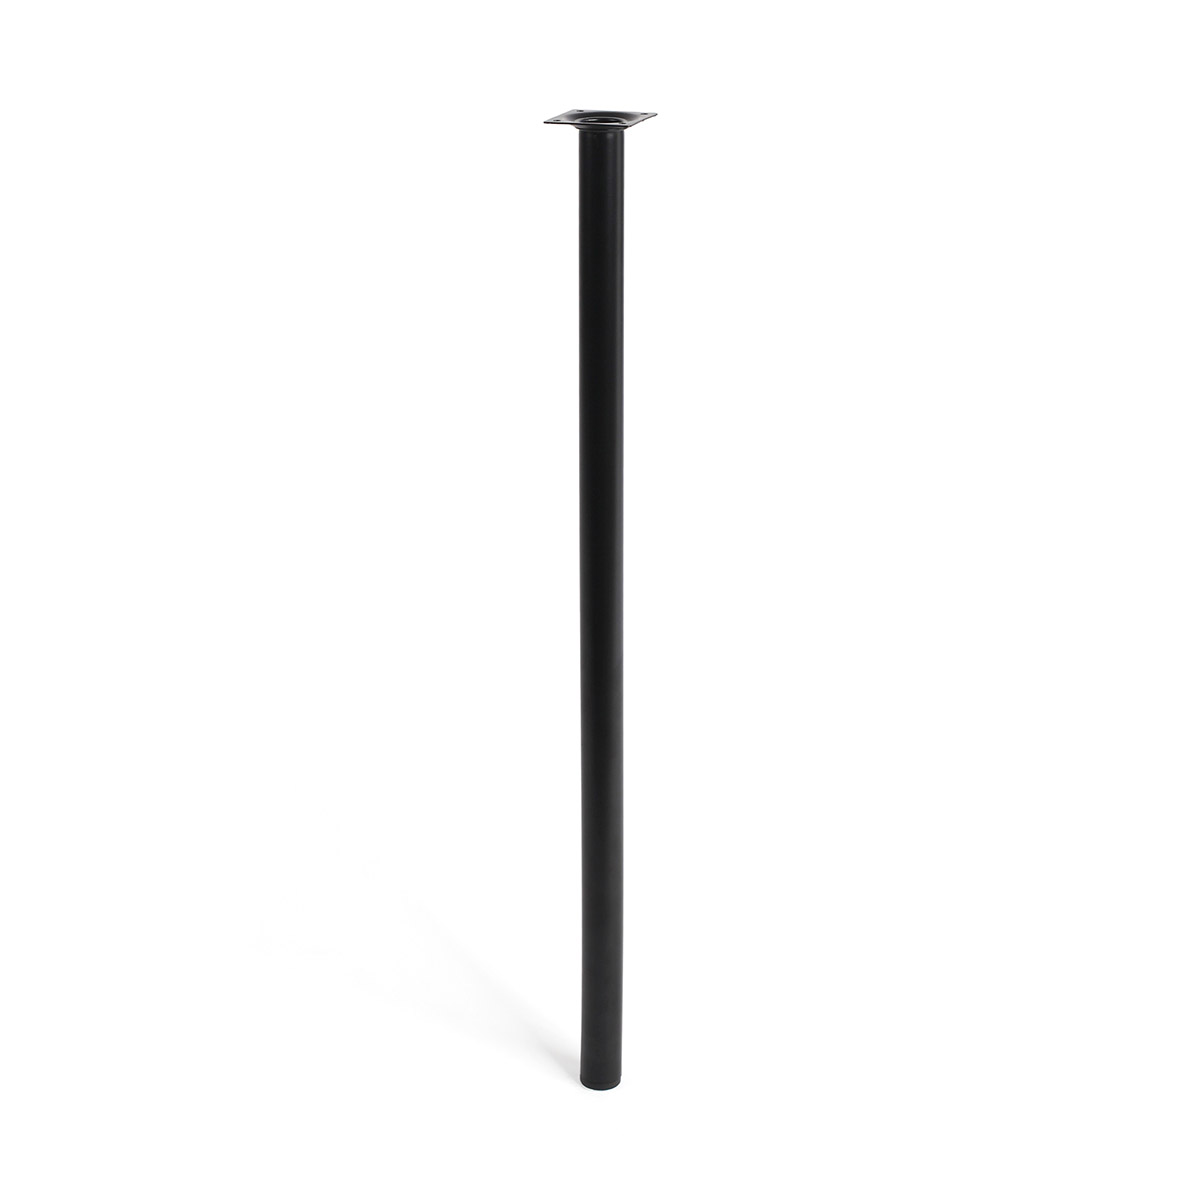 Pied cylindrique en acier d'une hauteur de 700 mm et finition noir. Dimensions: 30x30x700 mm